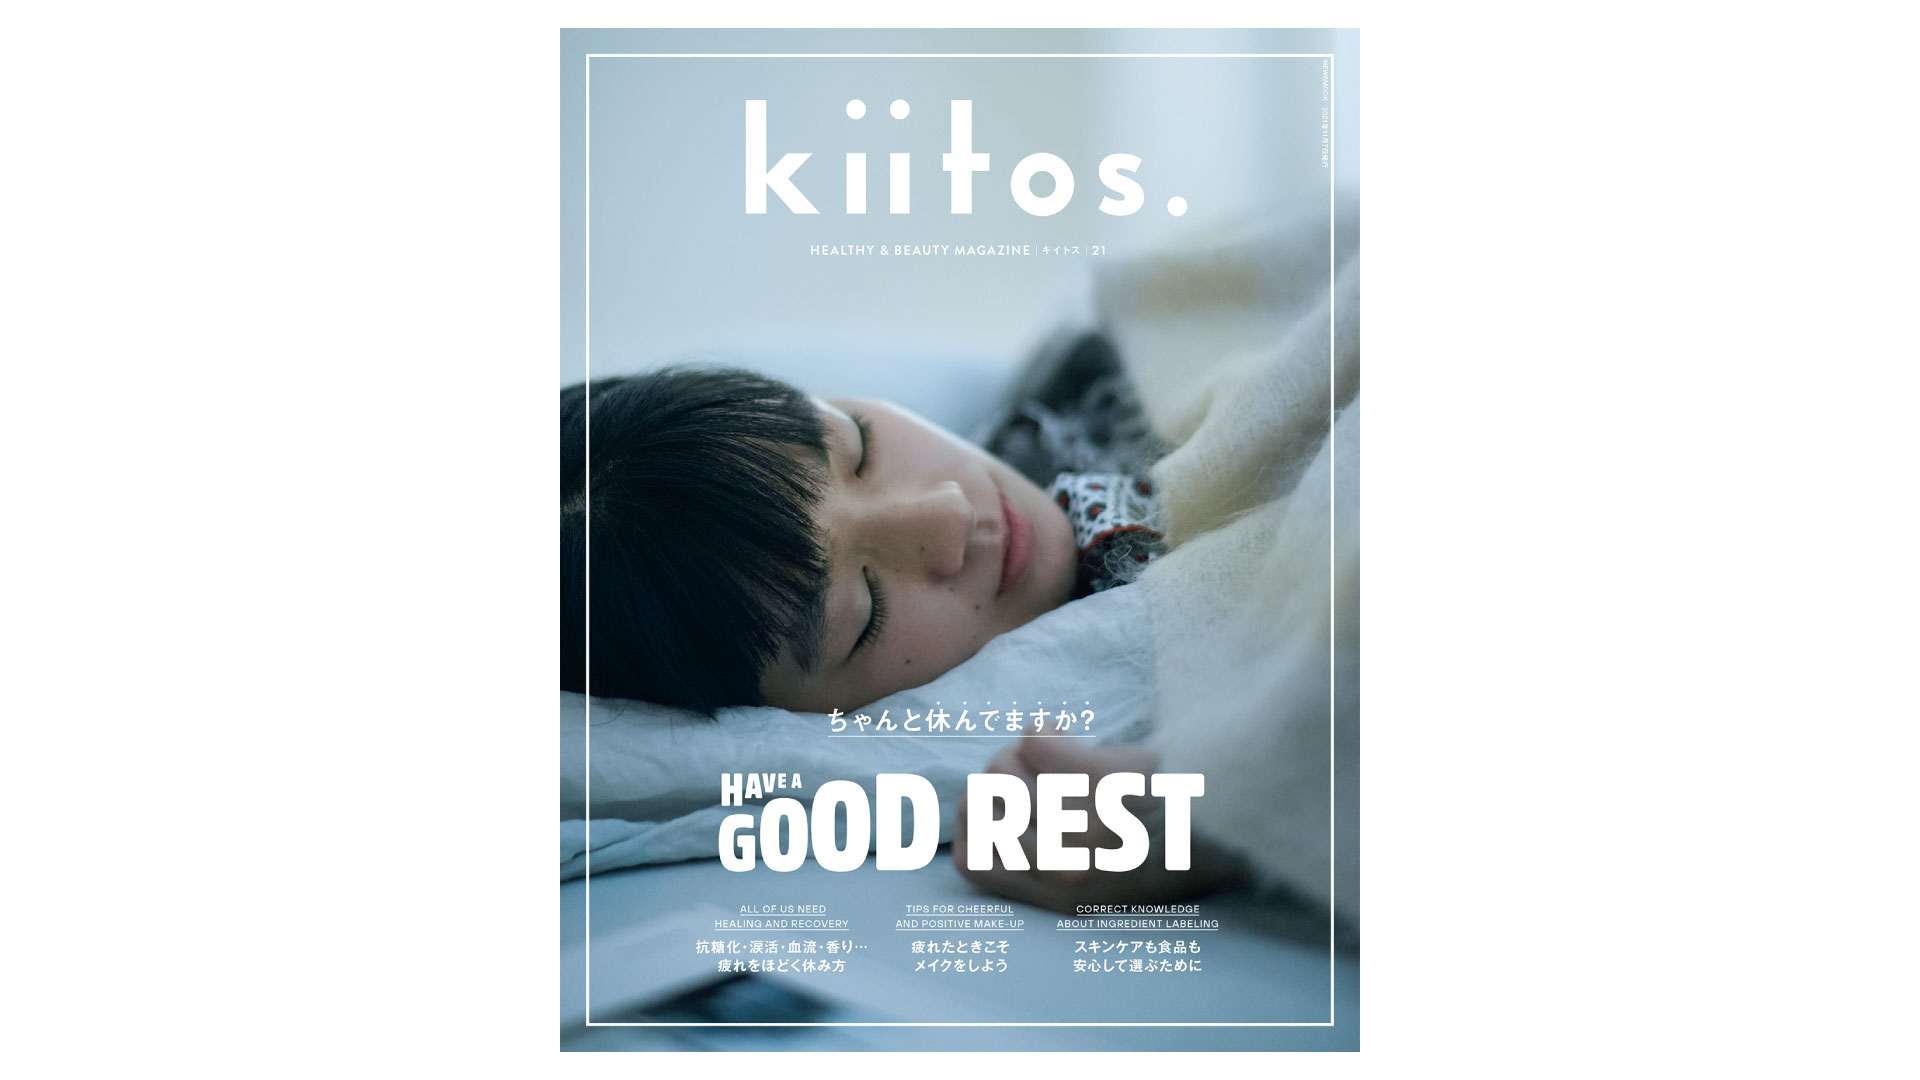 ヘルスケア＆ビューティー・ライフスタイル雑誌『kiitos.（キイトス）』に掲載されました。